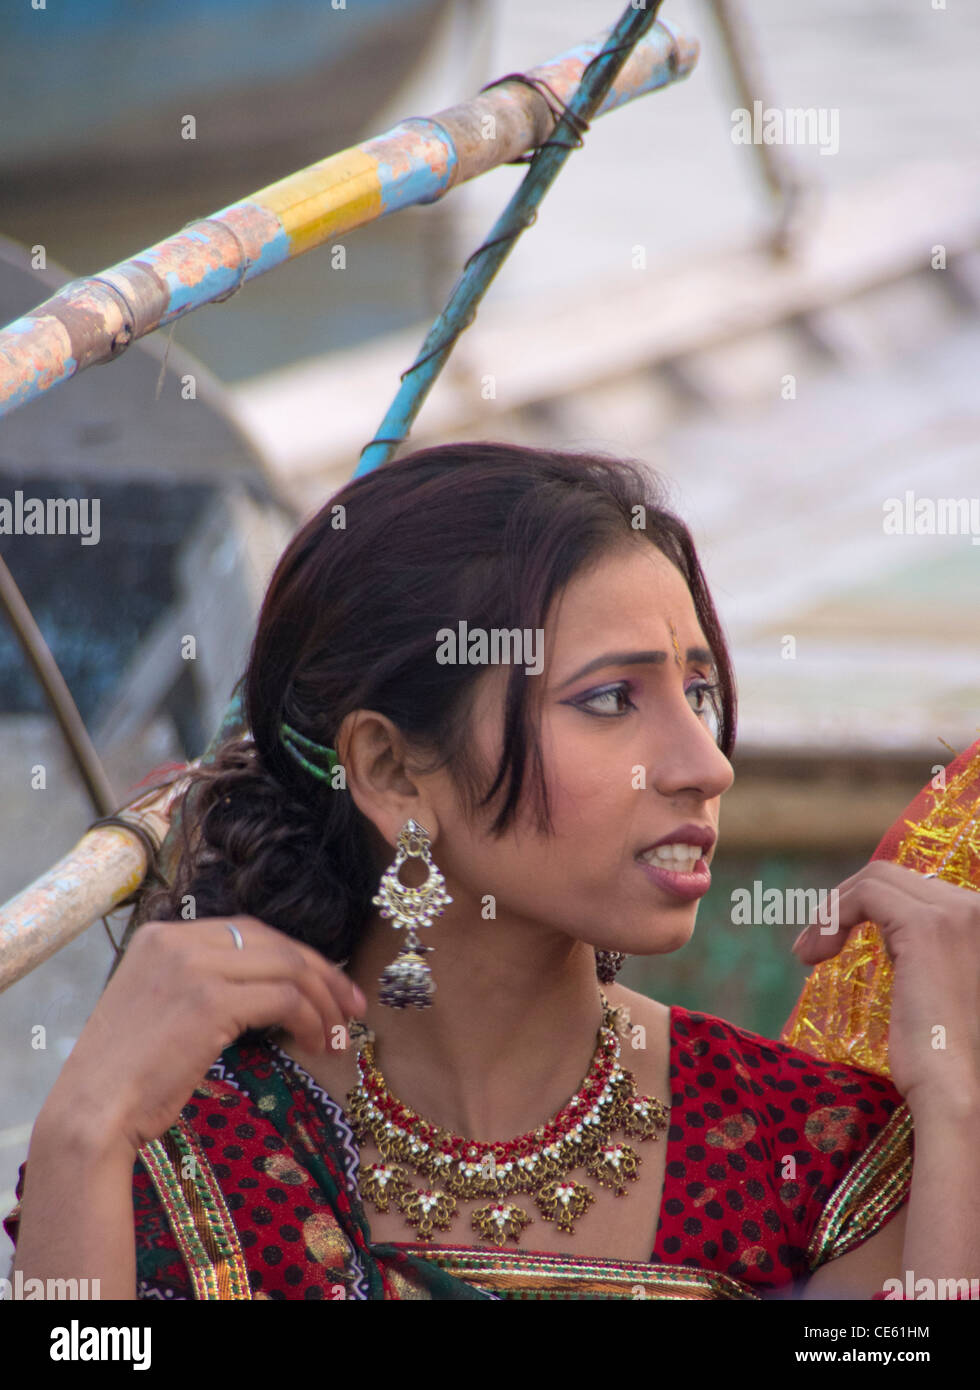 eine junge Frau regionaler indischer Schauspieler mit prominenten Ohrringe Stockfoto